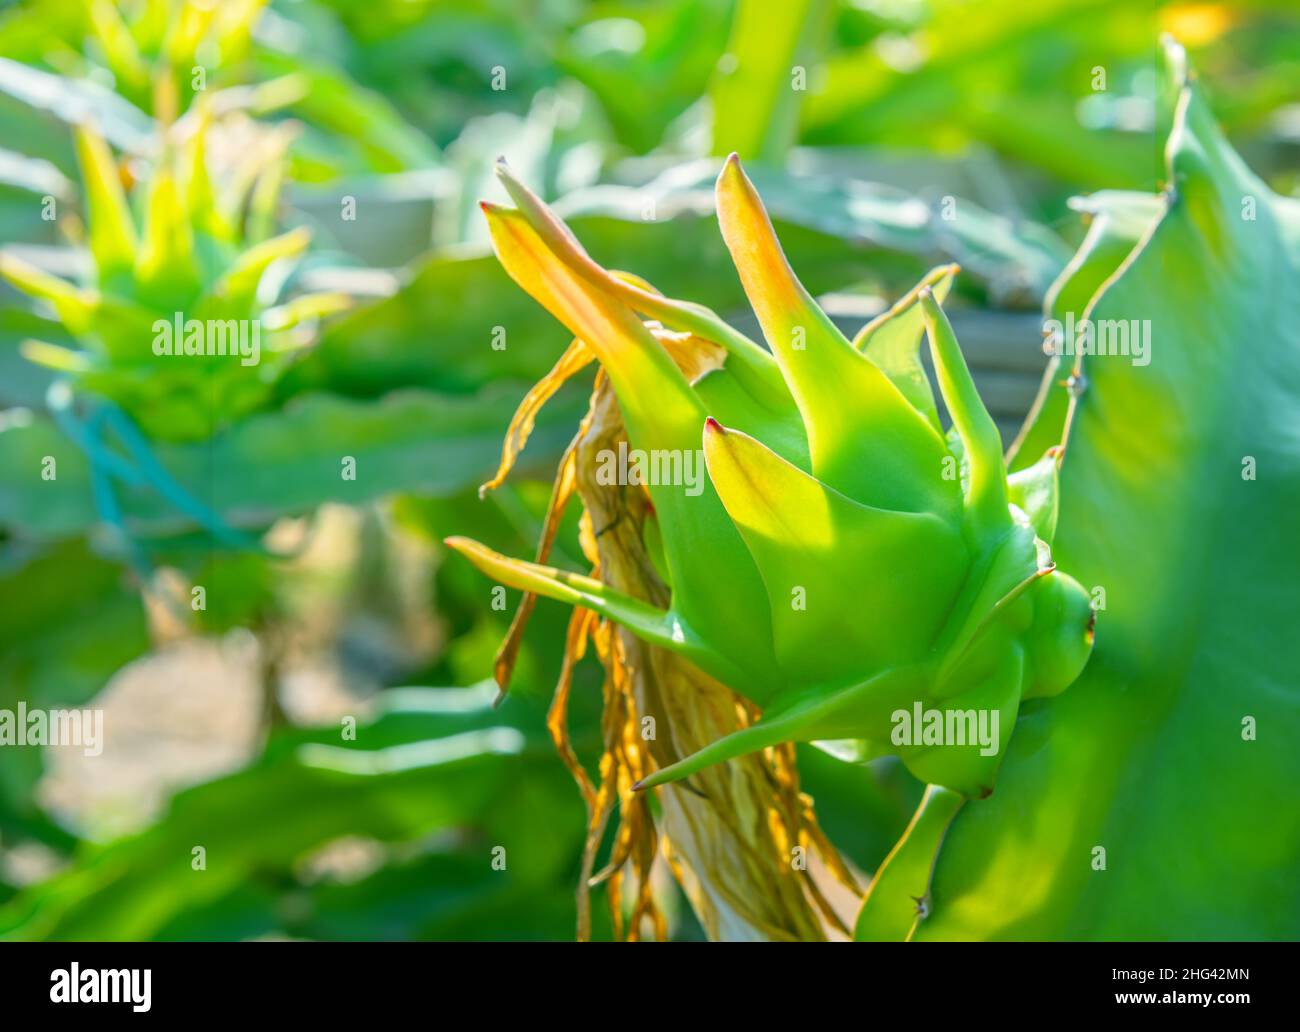 Grüne Drachenfrucht mit getrockneter Blüte, die auf einer Kaktuspflanze wächst. Nahaufnahme auf der Dragonfruitplantage Stockfoto